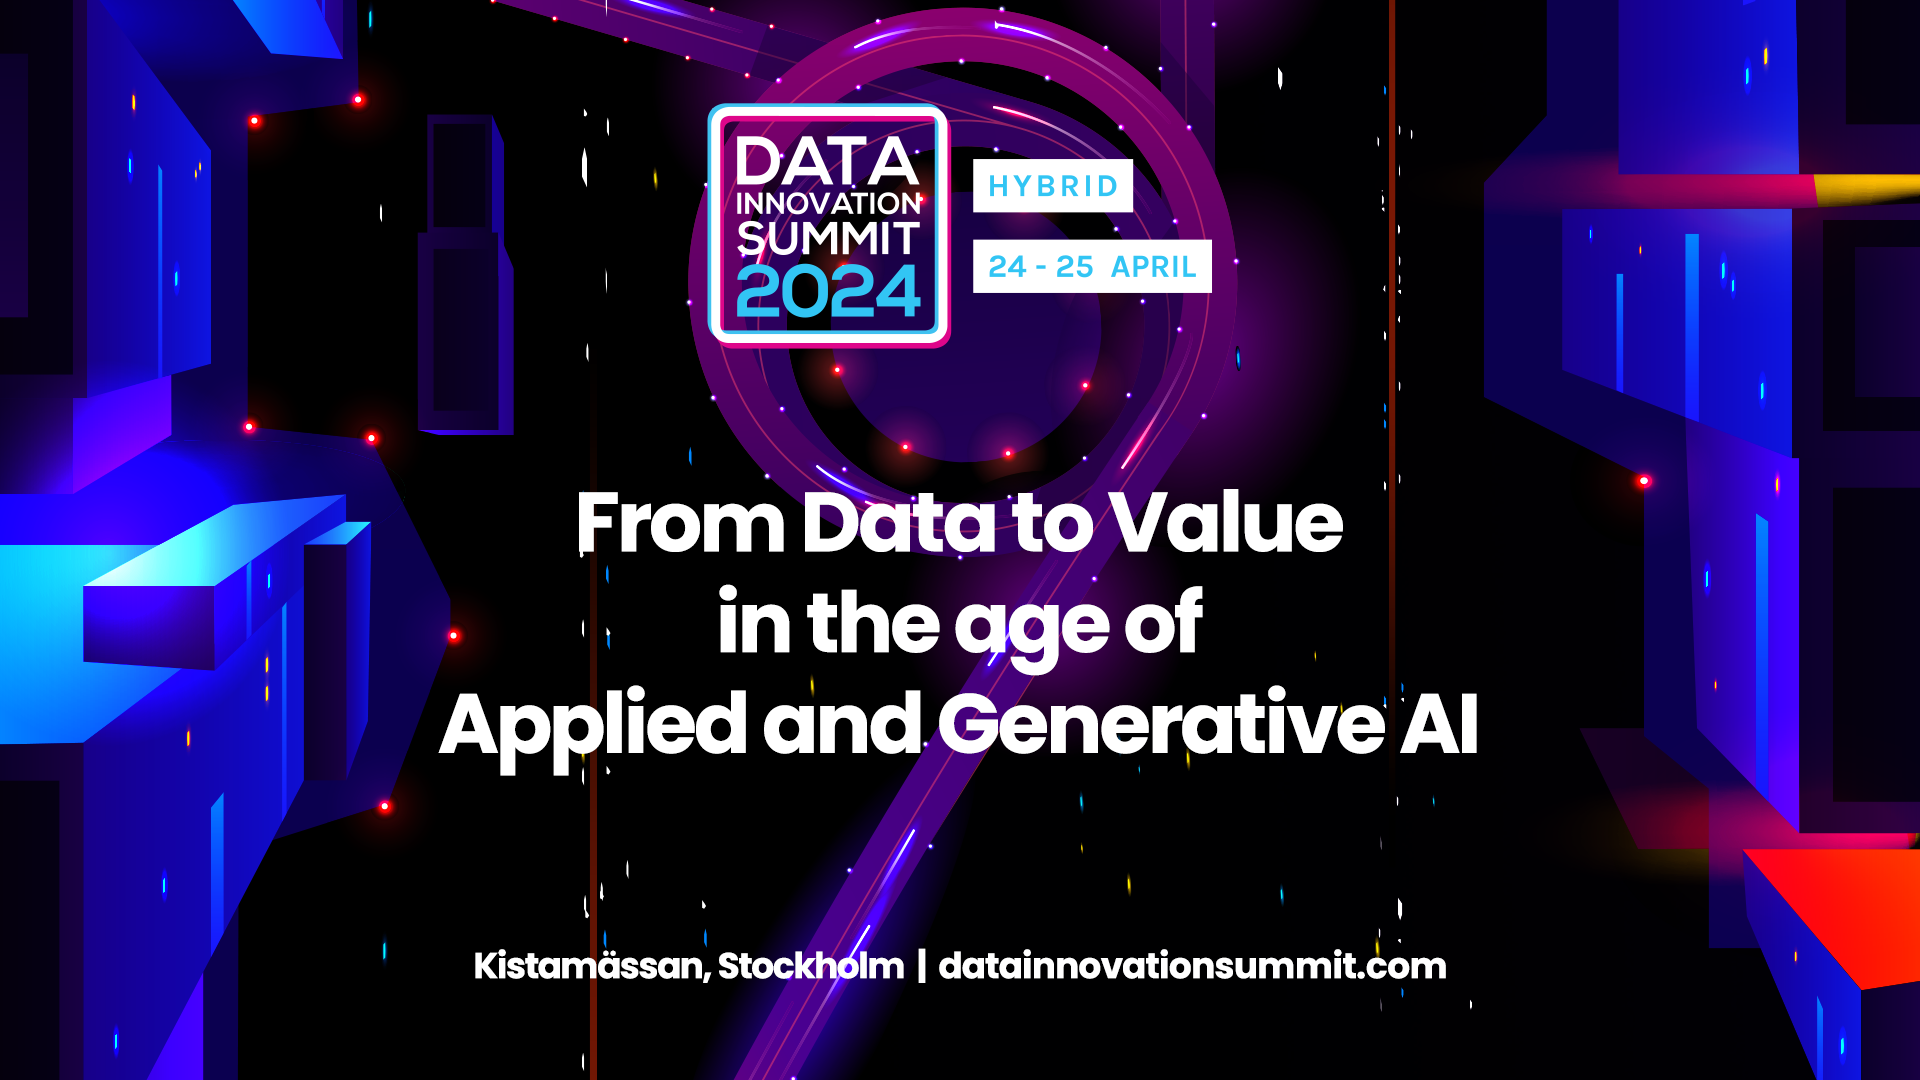 The Data Innovation Summit